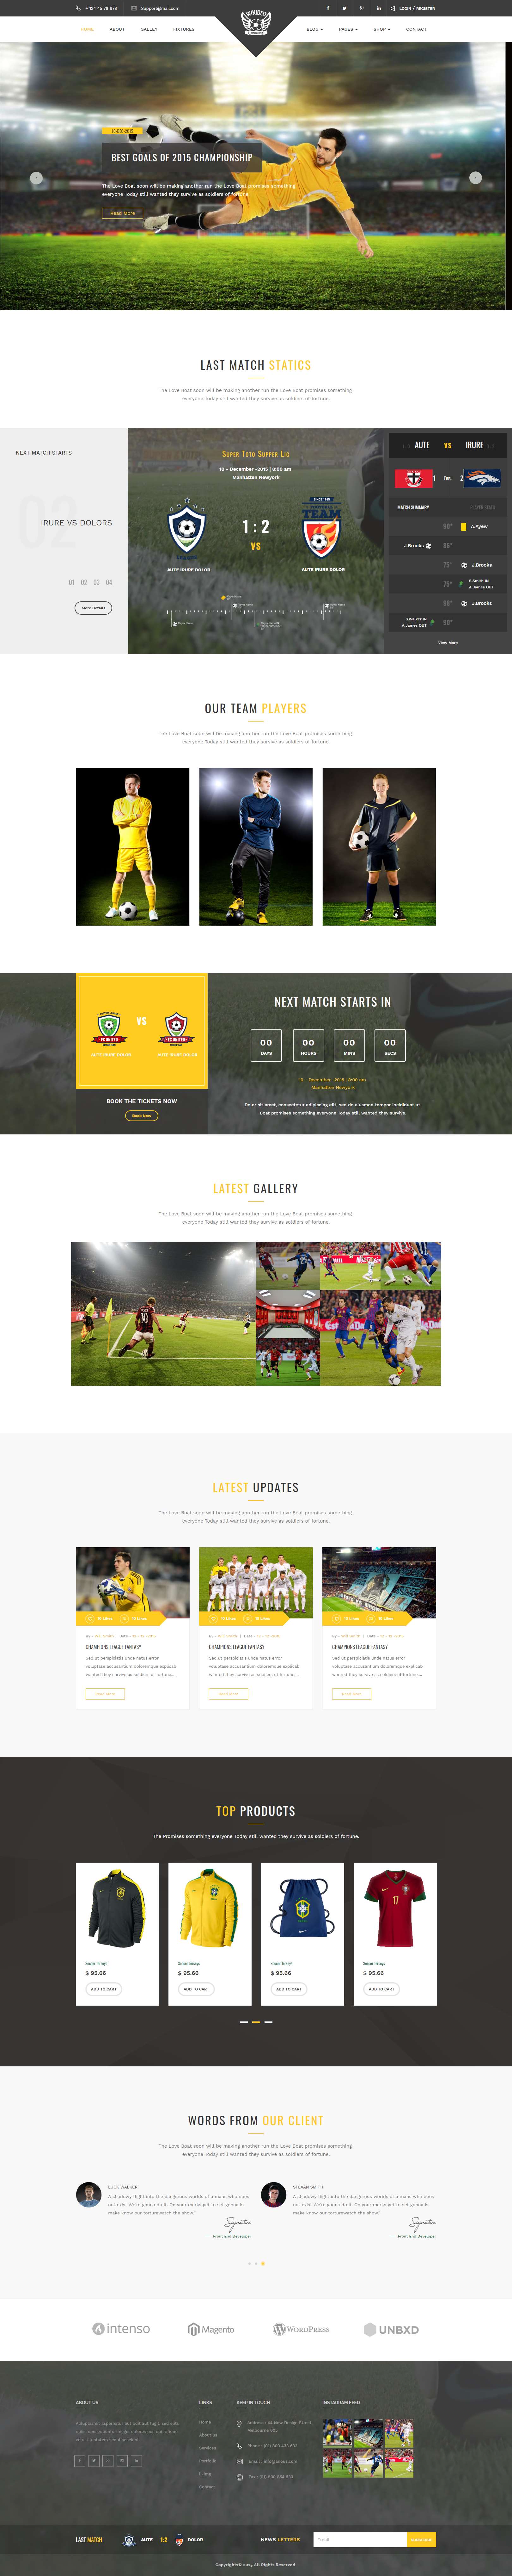 黄色简洁风格的足球体育用品商城网站源码下载